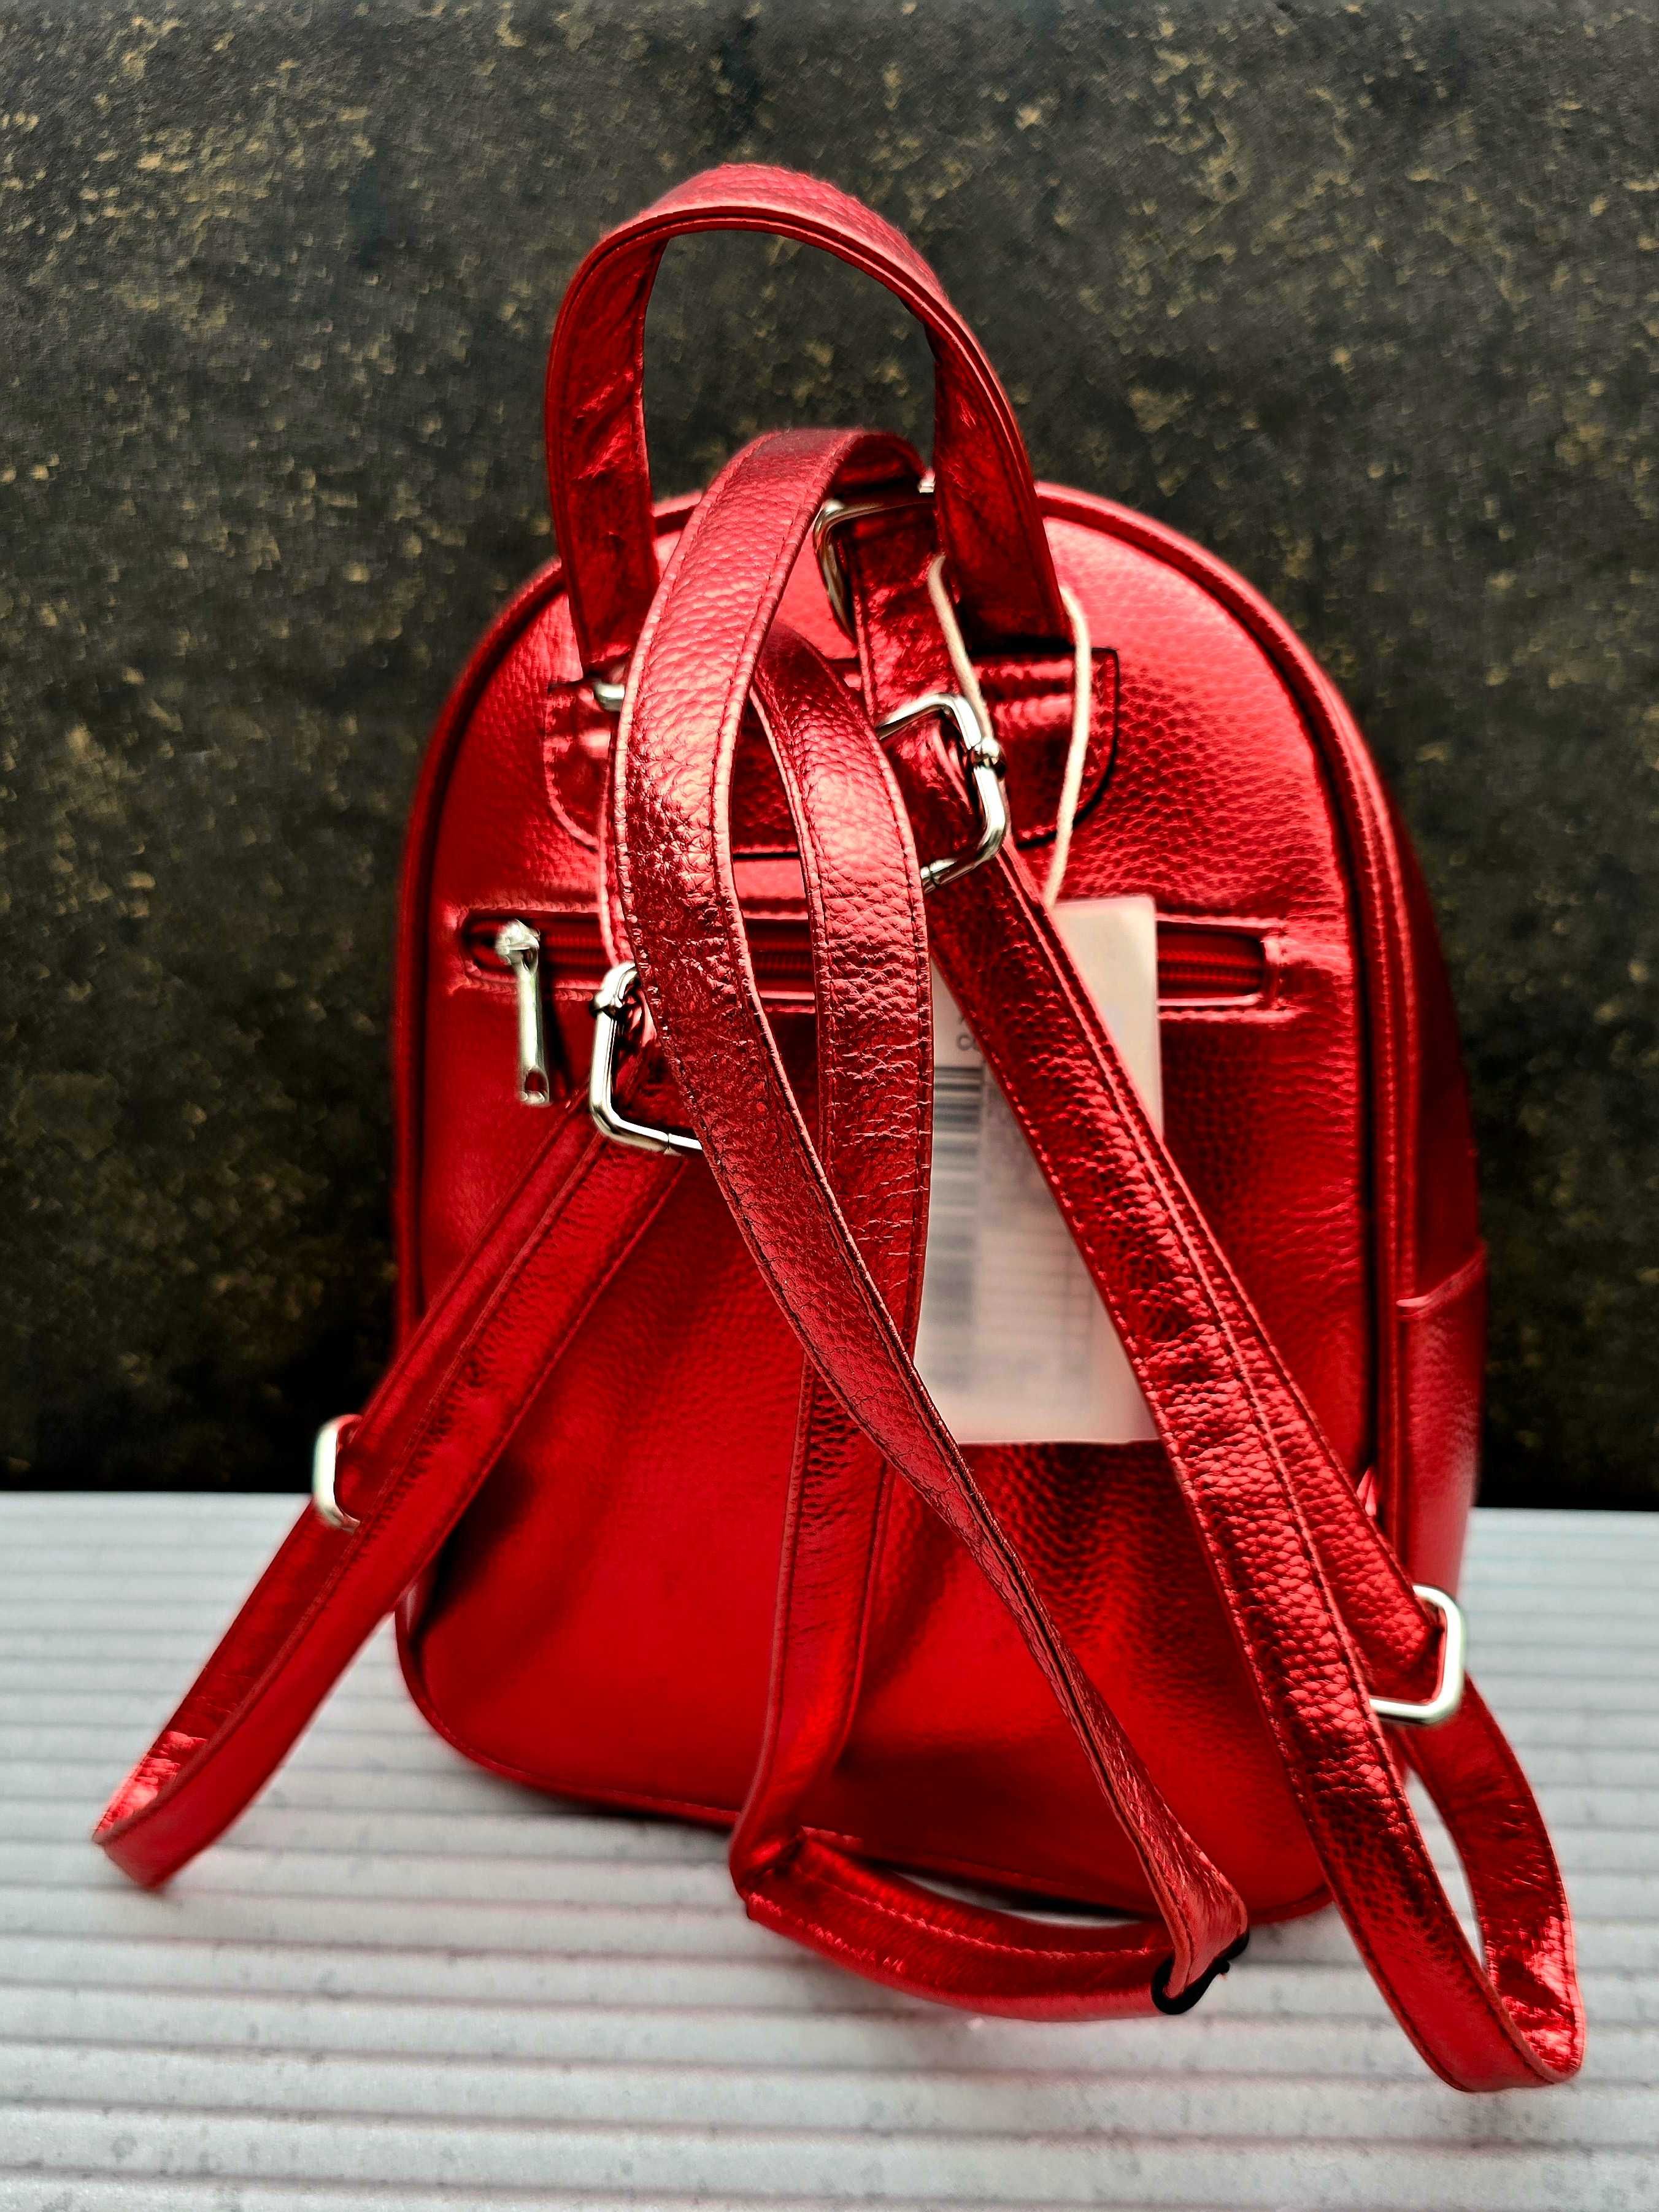 Kolorowy modny nowy plecak damski czerwony